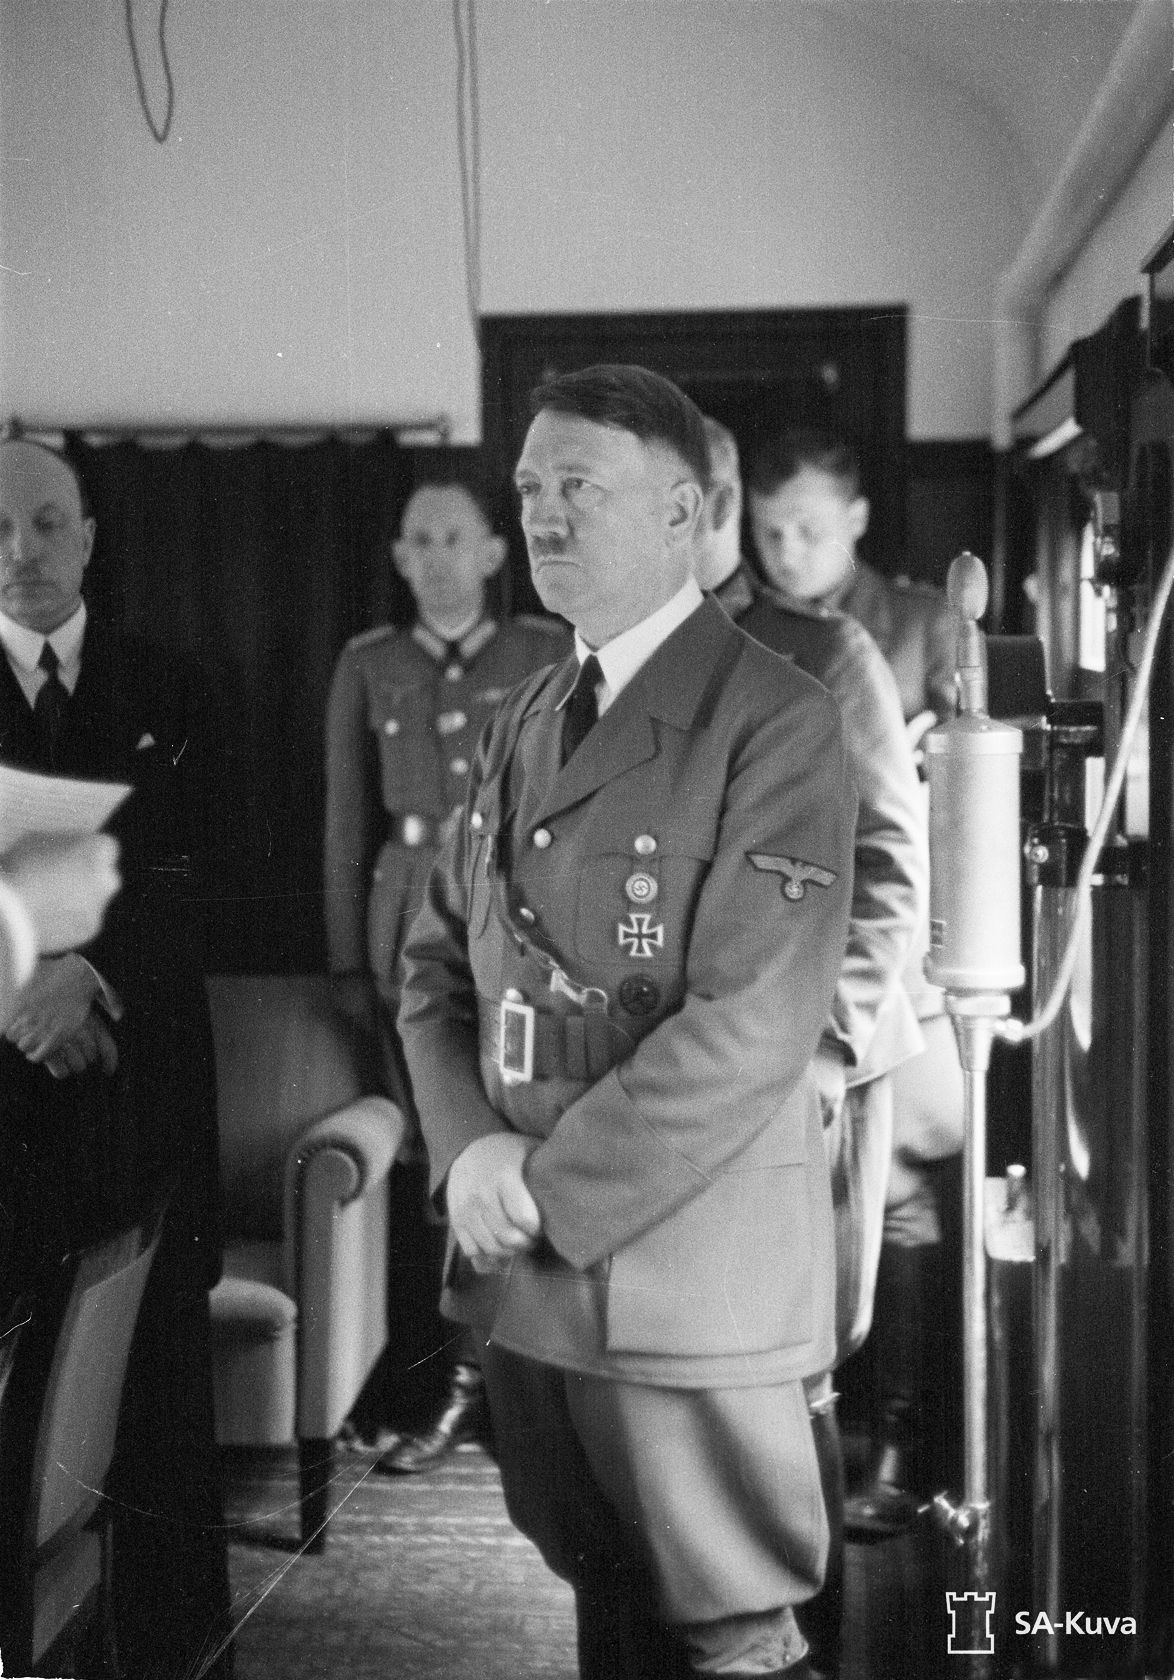 Adolf Hitler in Mannerheim's train